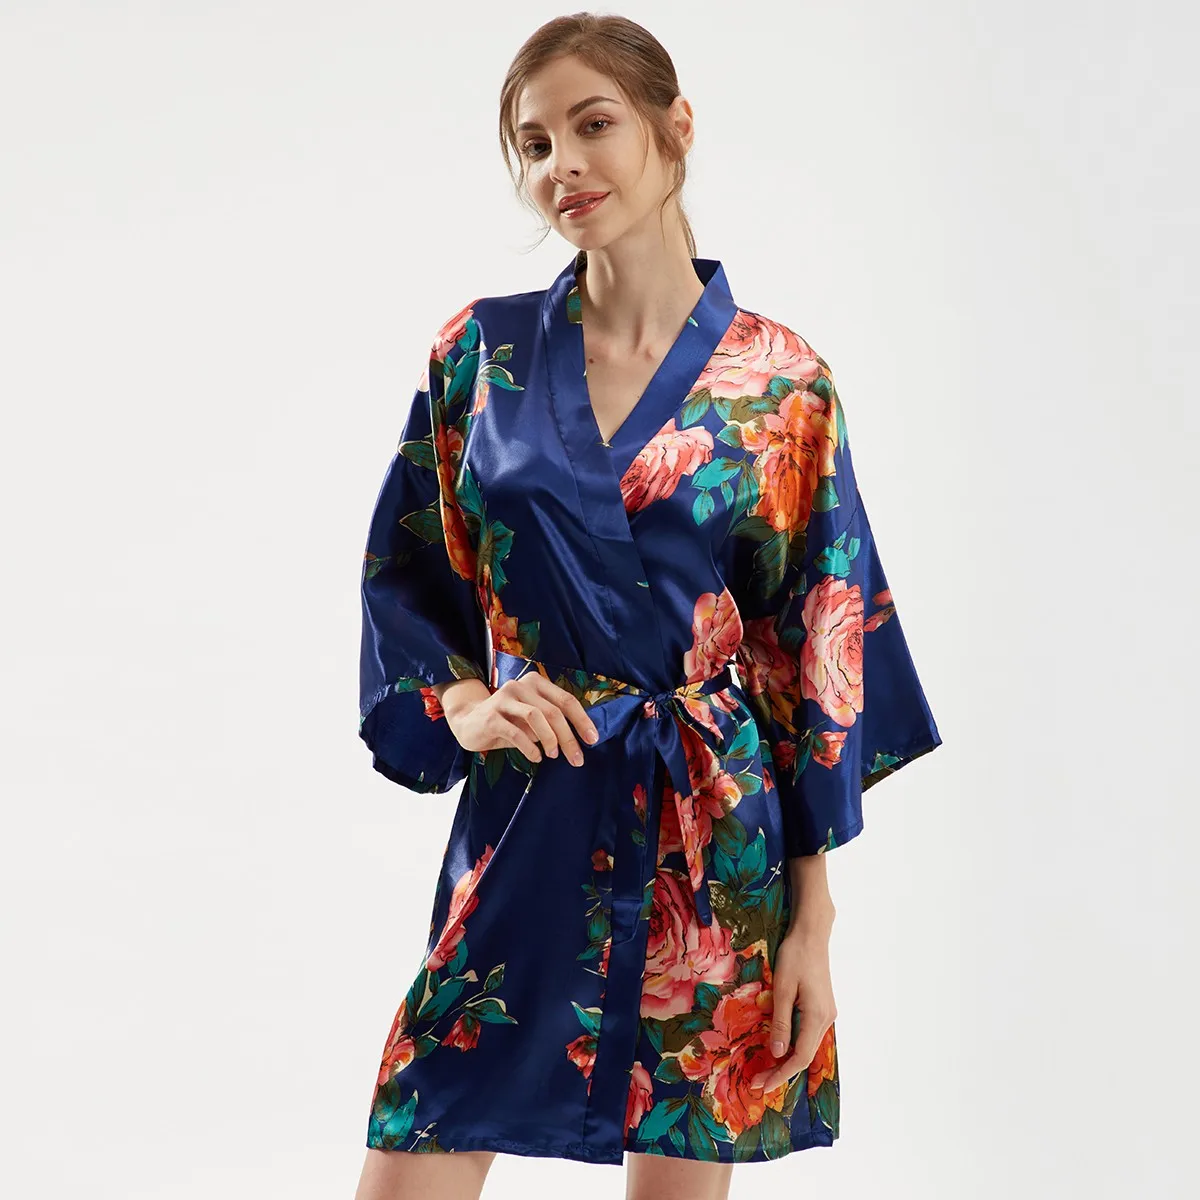 Женский халат большого размера, атласное платье-кимоно с цветочным принтом, халат с V-образным вырезом, ночная рубашка, сексуальное свадебное интимное белье для новобрачных, ночная рубашка